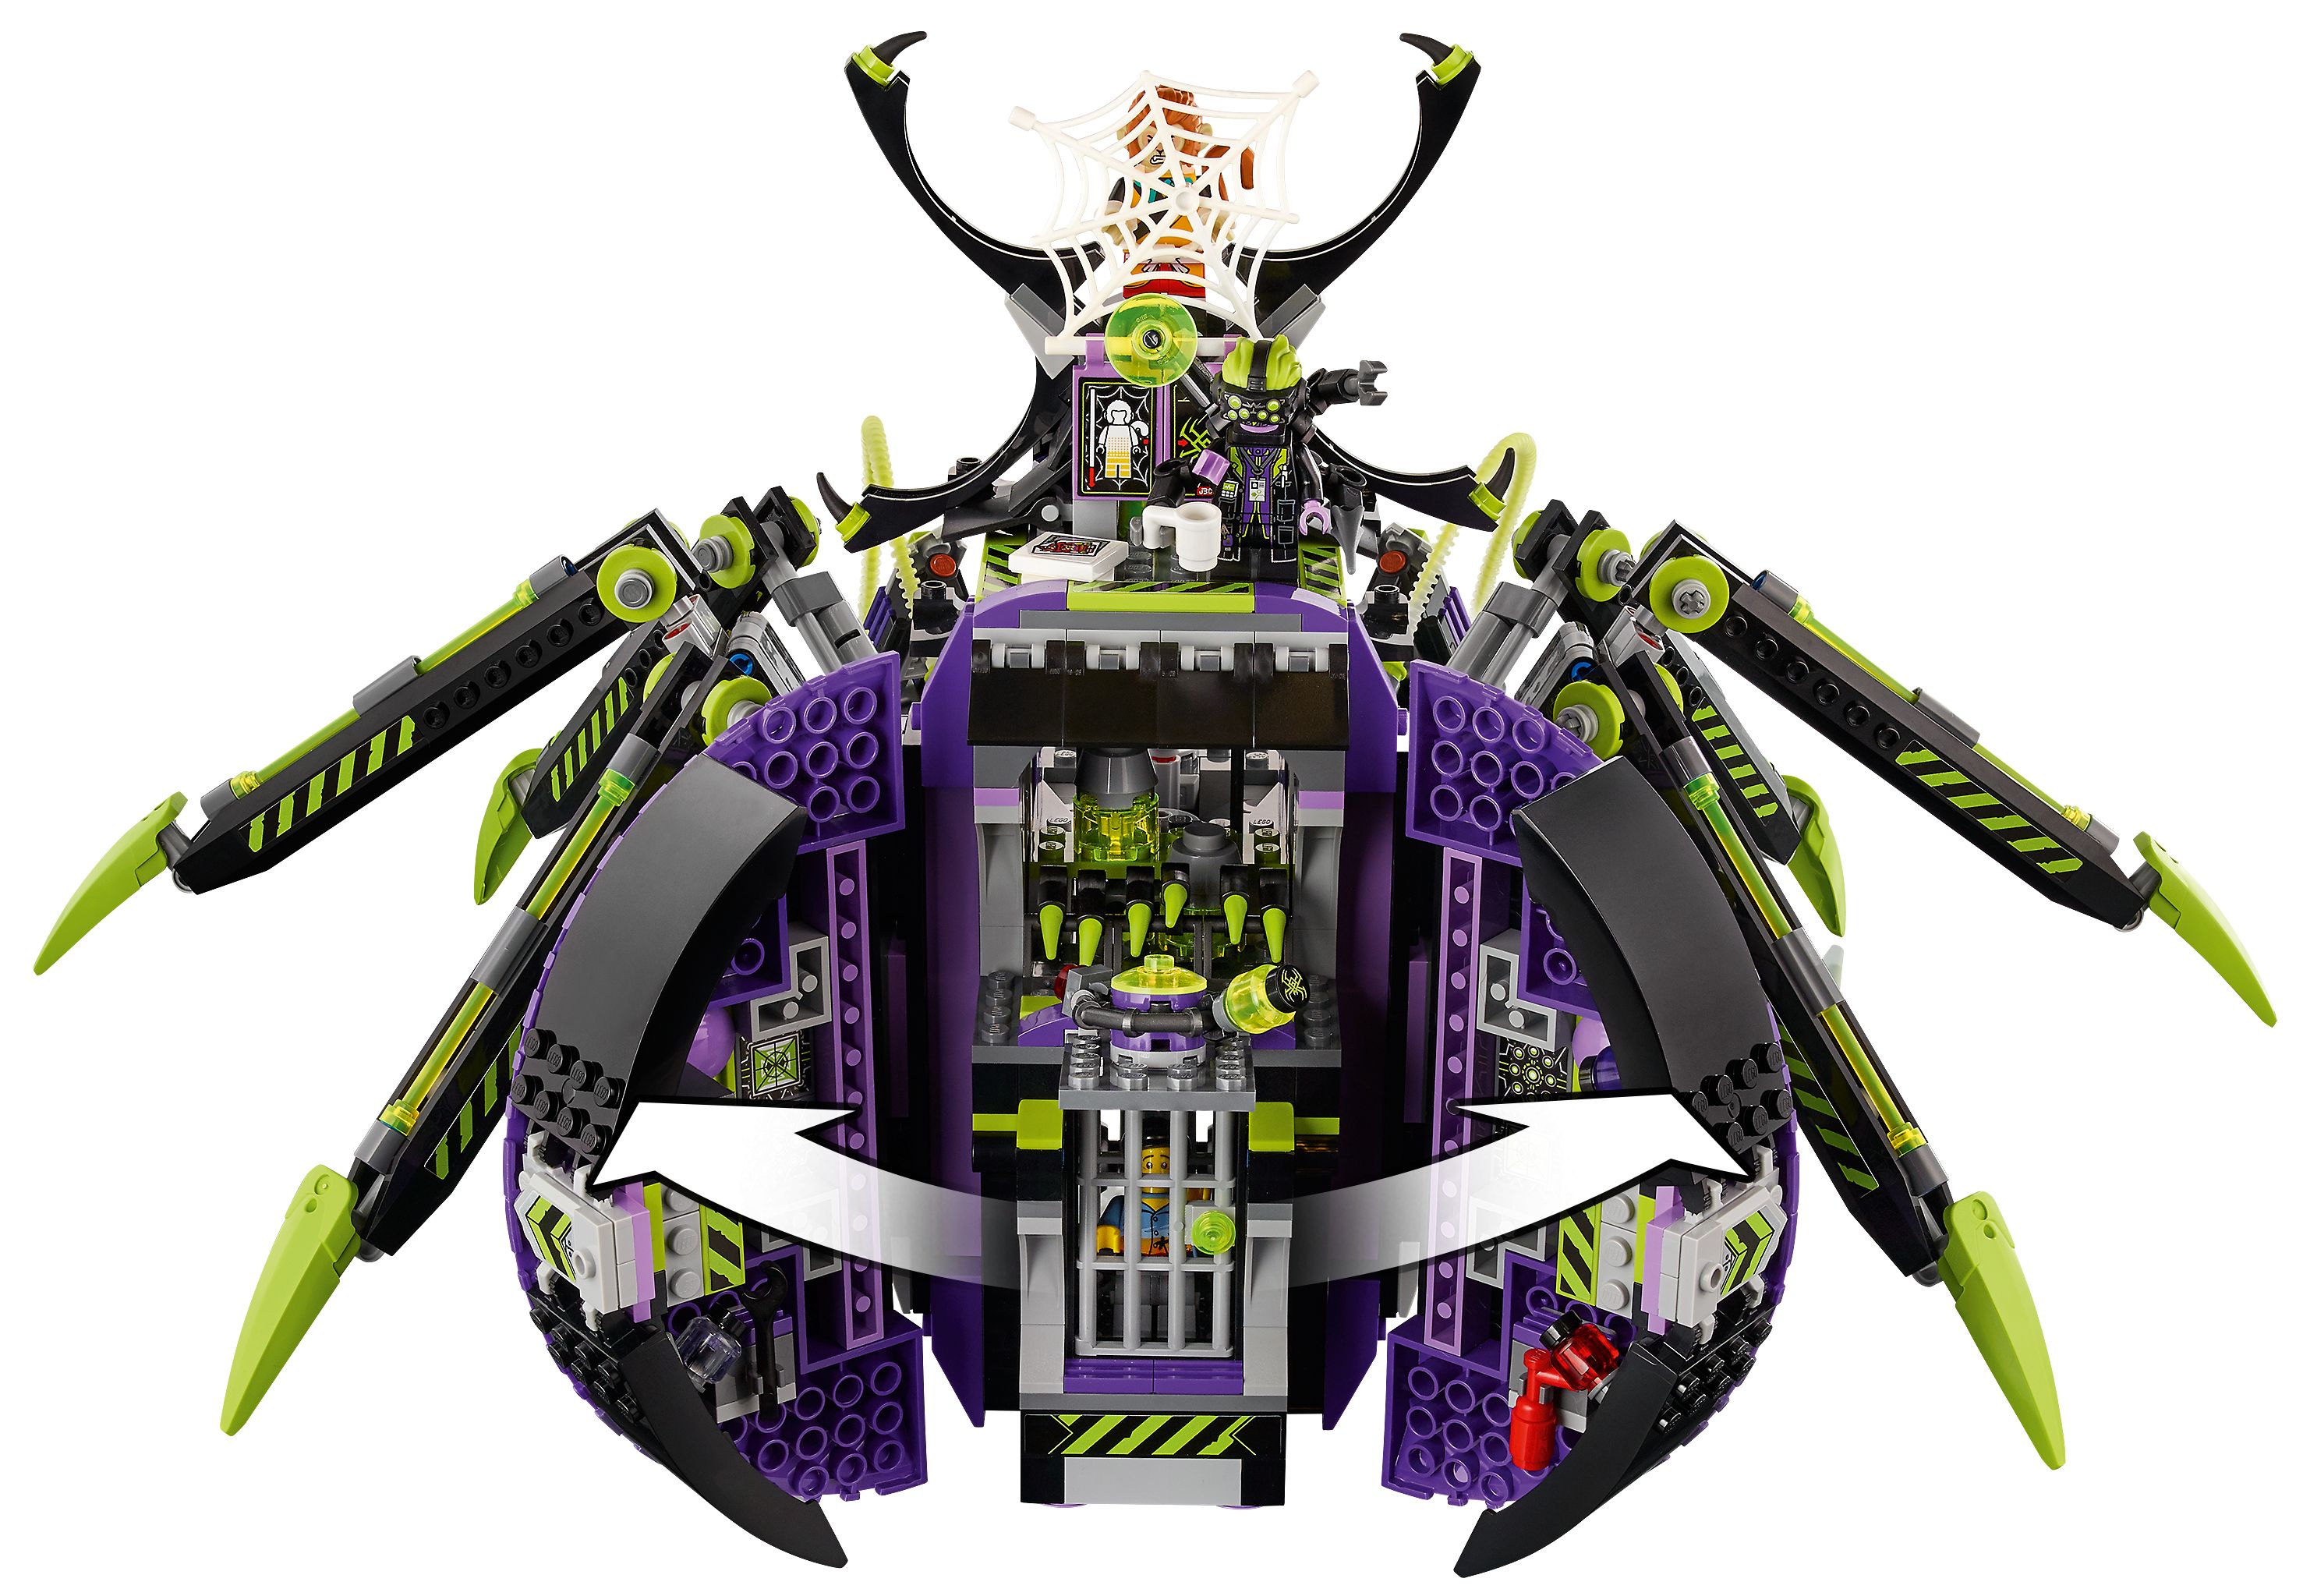 LEGO Monkie Kid 80022 Hauptquartier der Spider Queen LEGO_80022_alt3.jpg